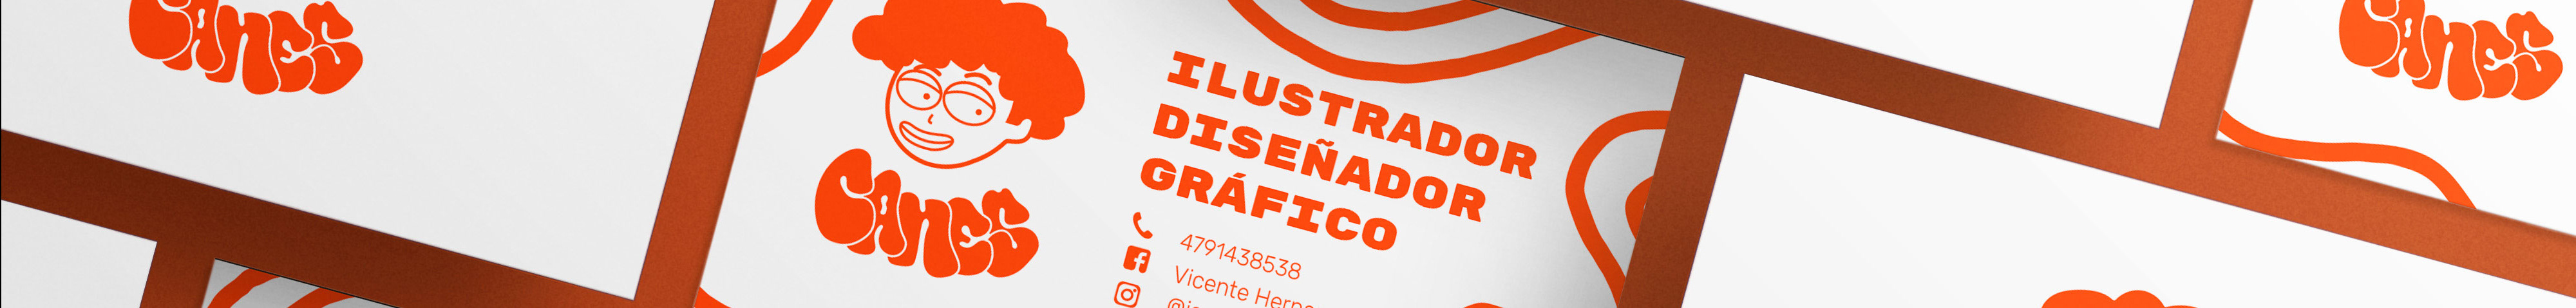 Vicente Guerrero's profile banner